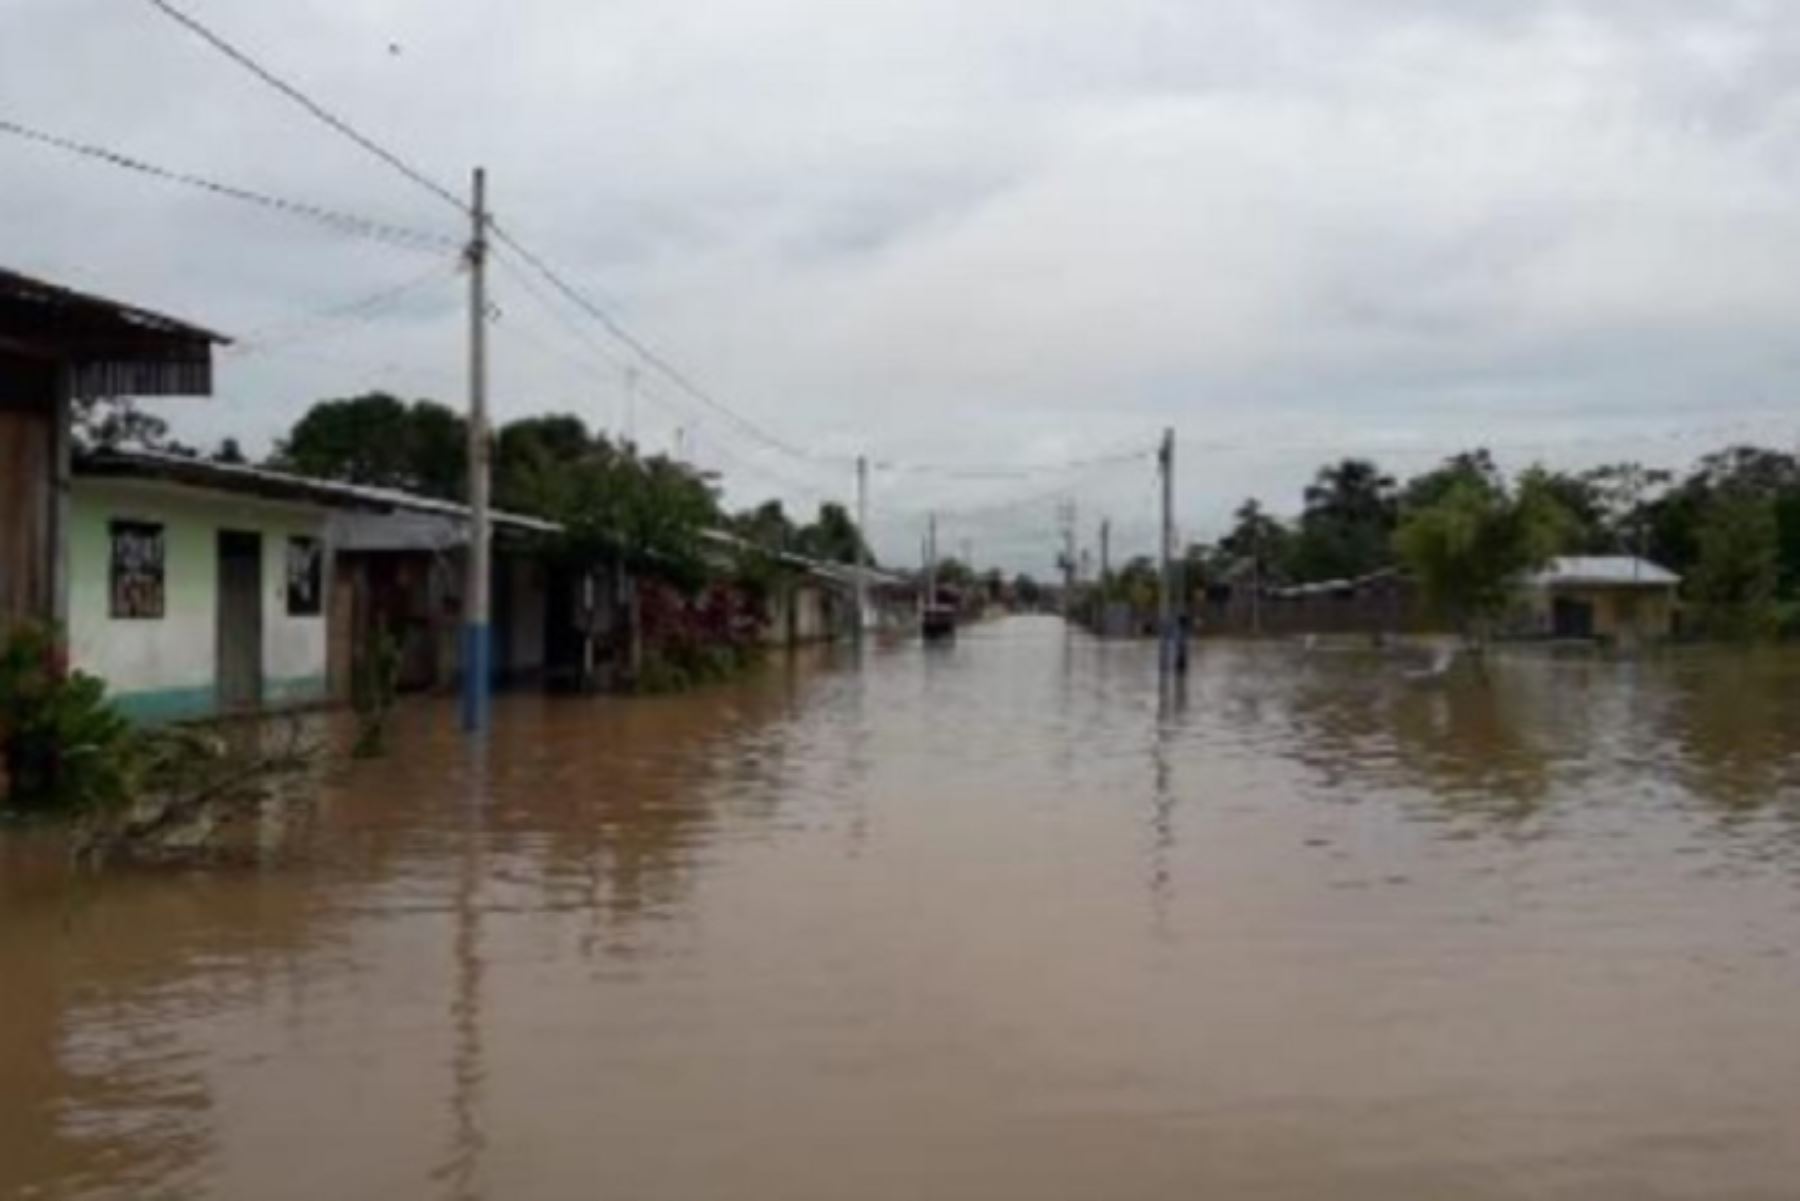 El desborde del río Huallaga por las fuertes lluvias dejó en los distritos de El Porvenir y Papaplaya, provincia y departamento de San Martín, 230 personas afectadas y 65 viviendas inundadas, al igual que 2 colegios y un local público. También colapsó el desagüe.